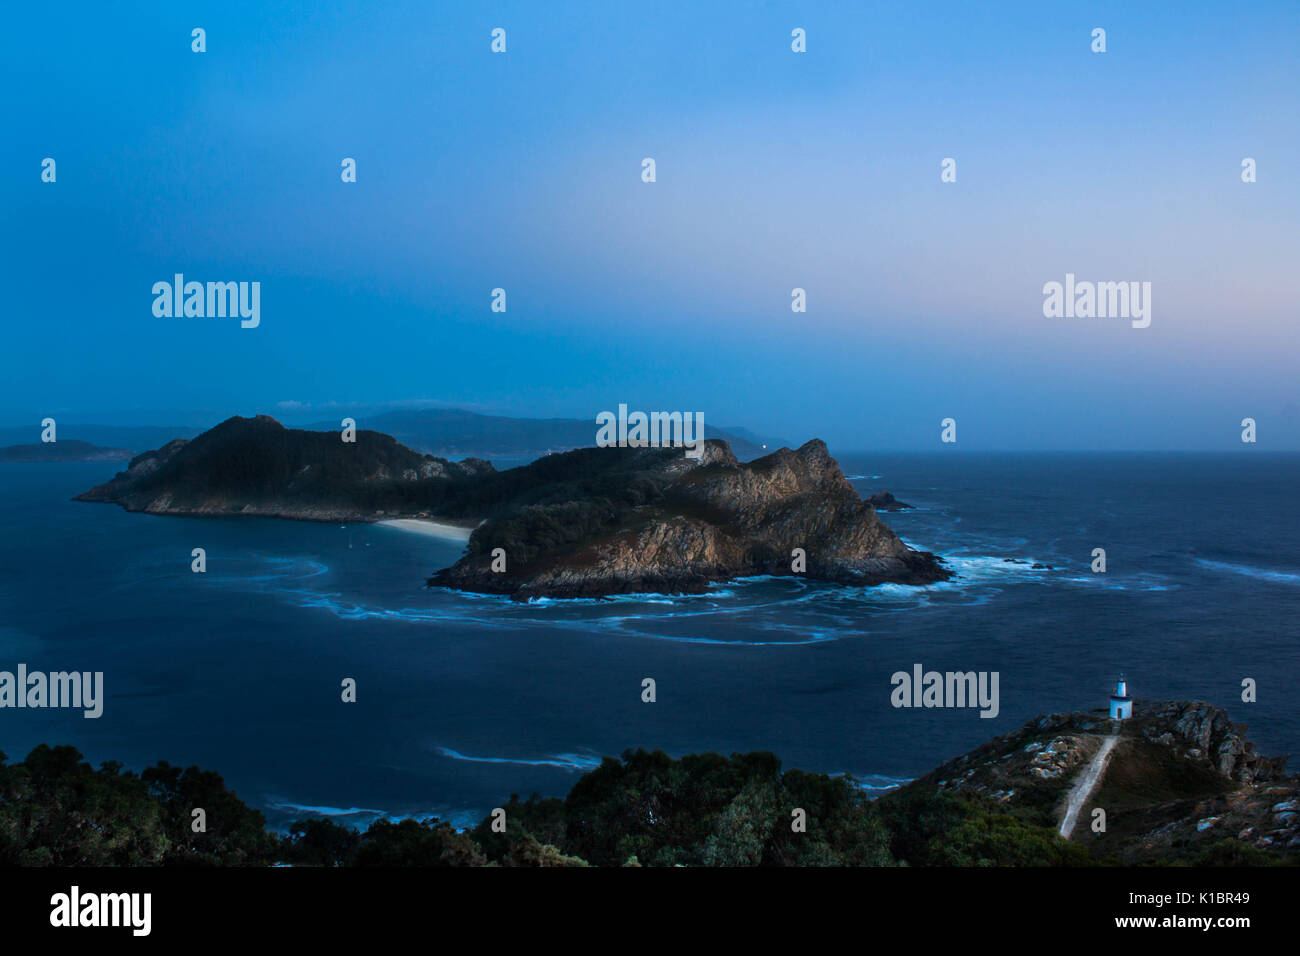 Nacht Landschaftsaufnahmen aus Cies Inseln in Galicien Spanien, Luftaufnahme Stockfoto